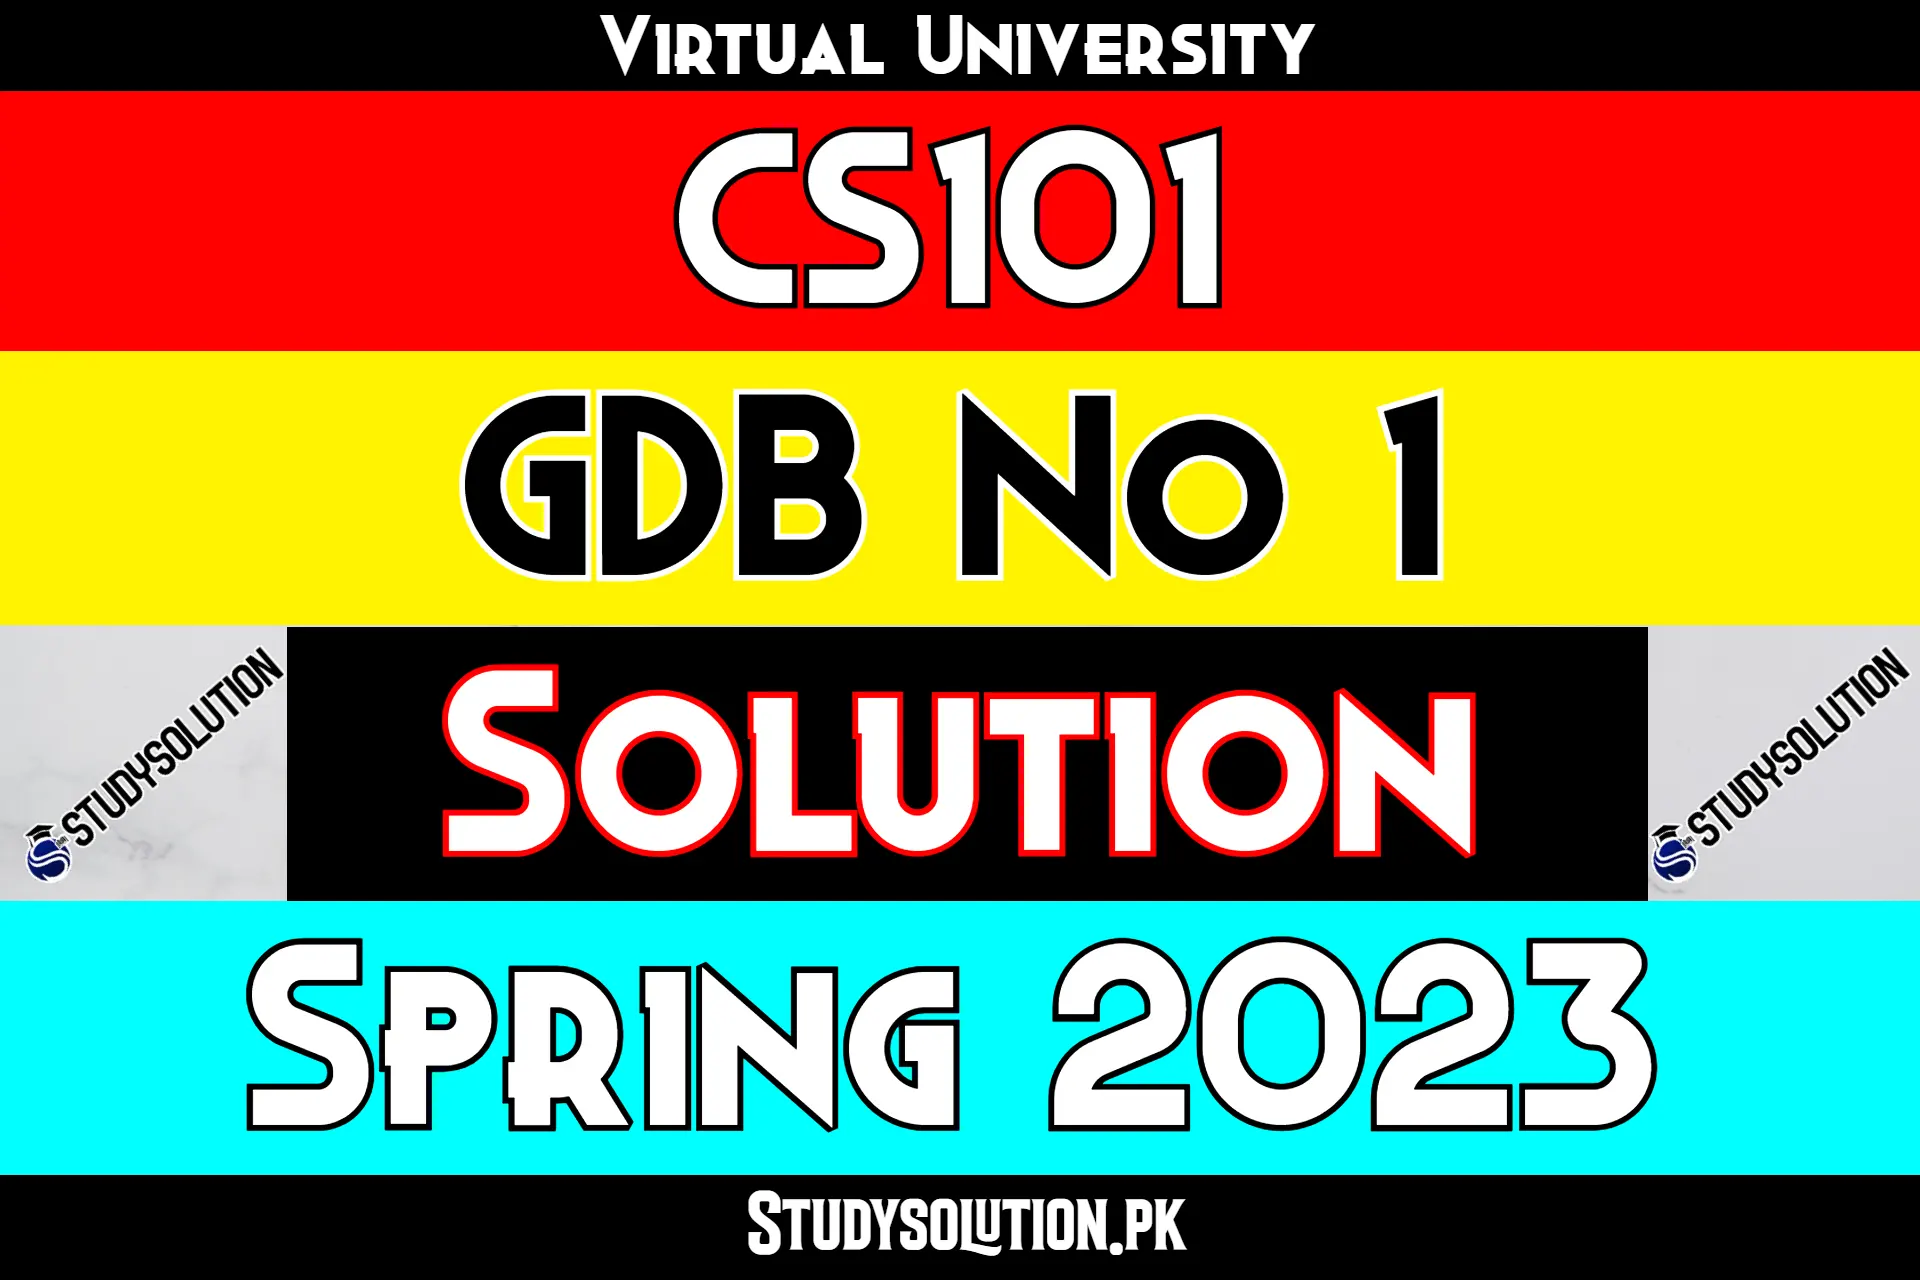 CS101 GDB No1 Solution Spring 2023